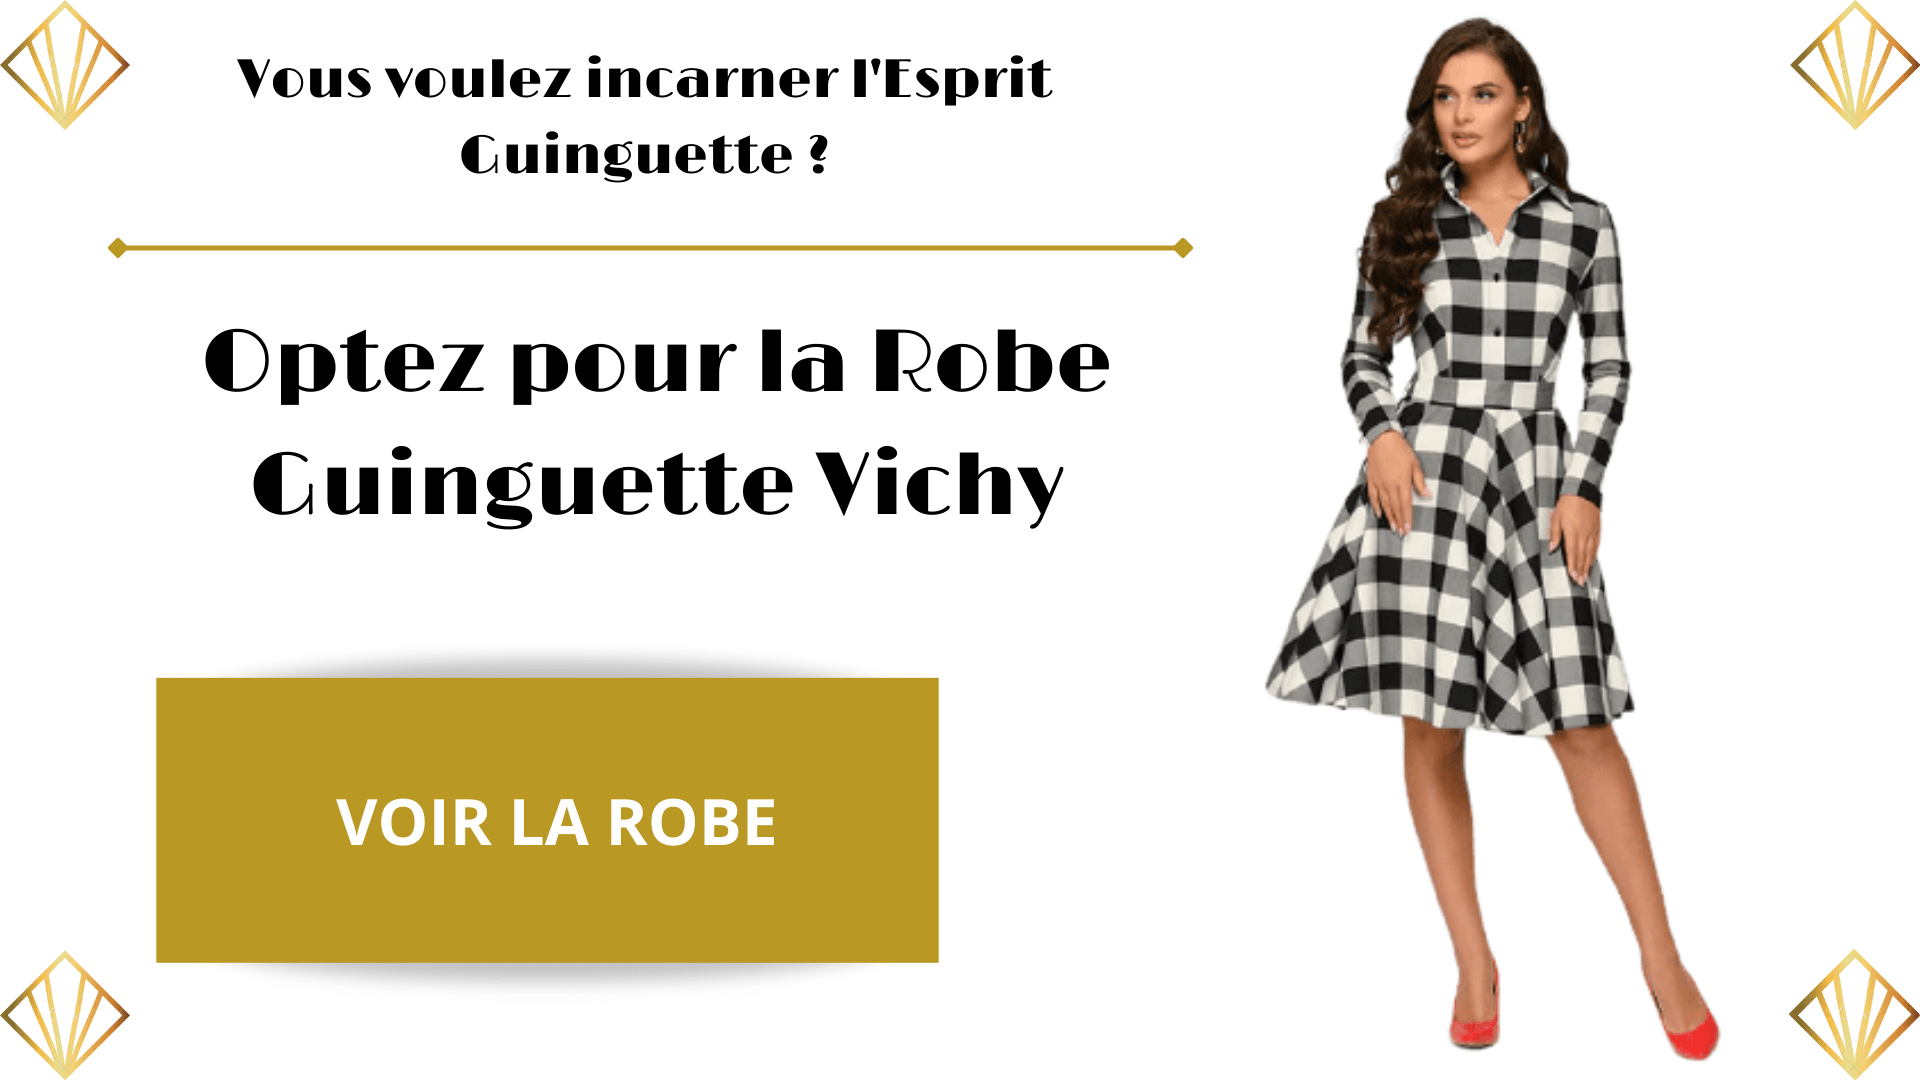 Robe Guinguette Vichy Soirée Guinguette